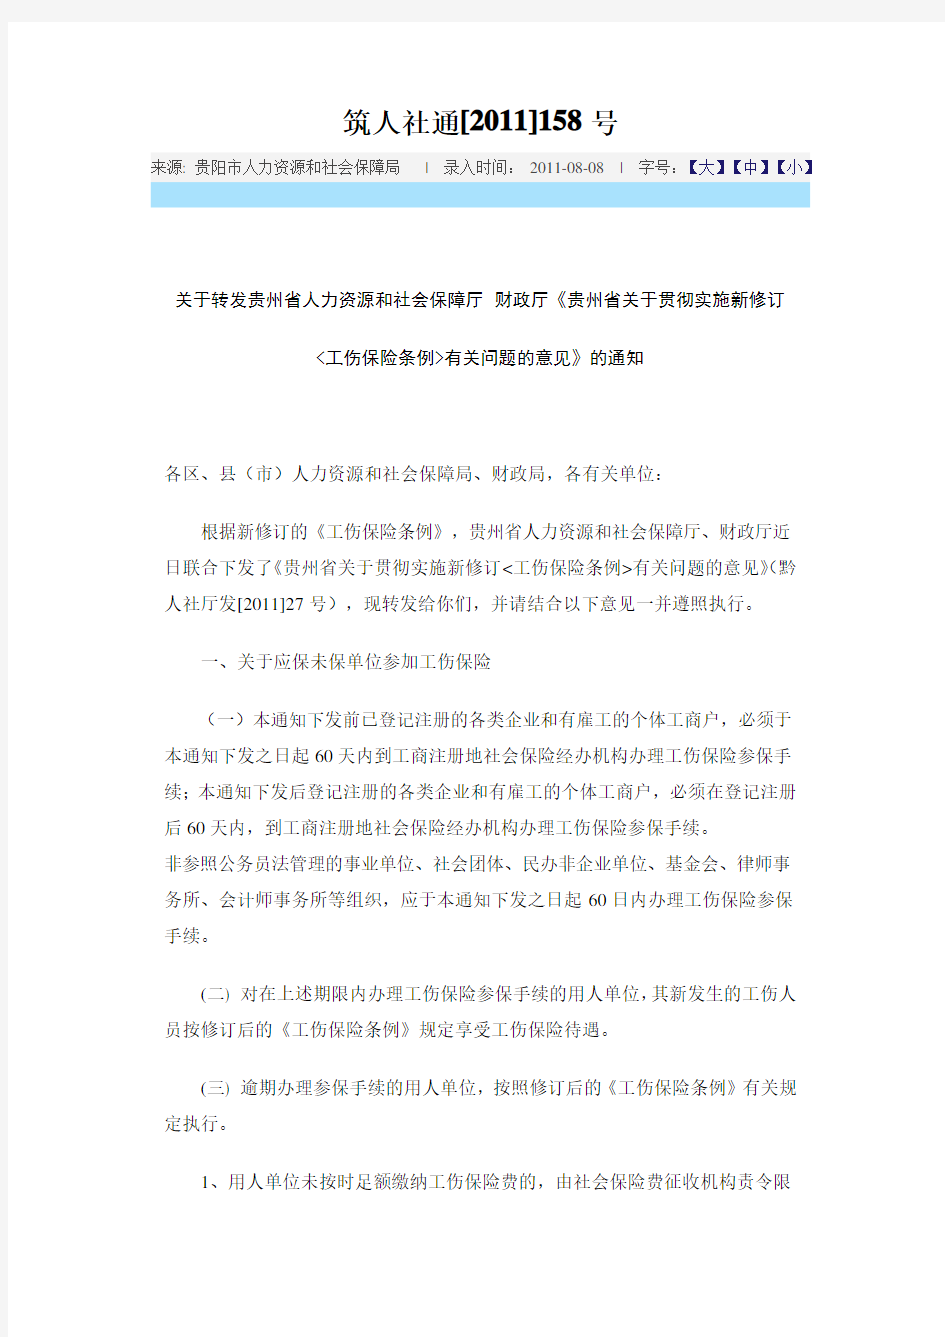 贵州省关于贯彻实施新修订的《工伤保险条例》